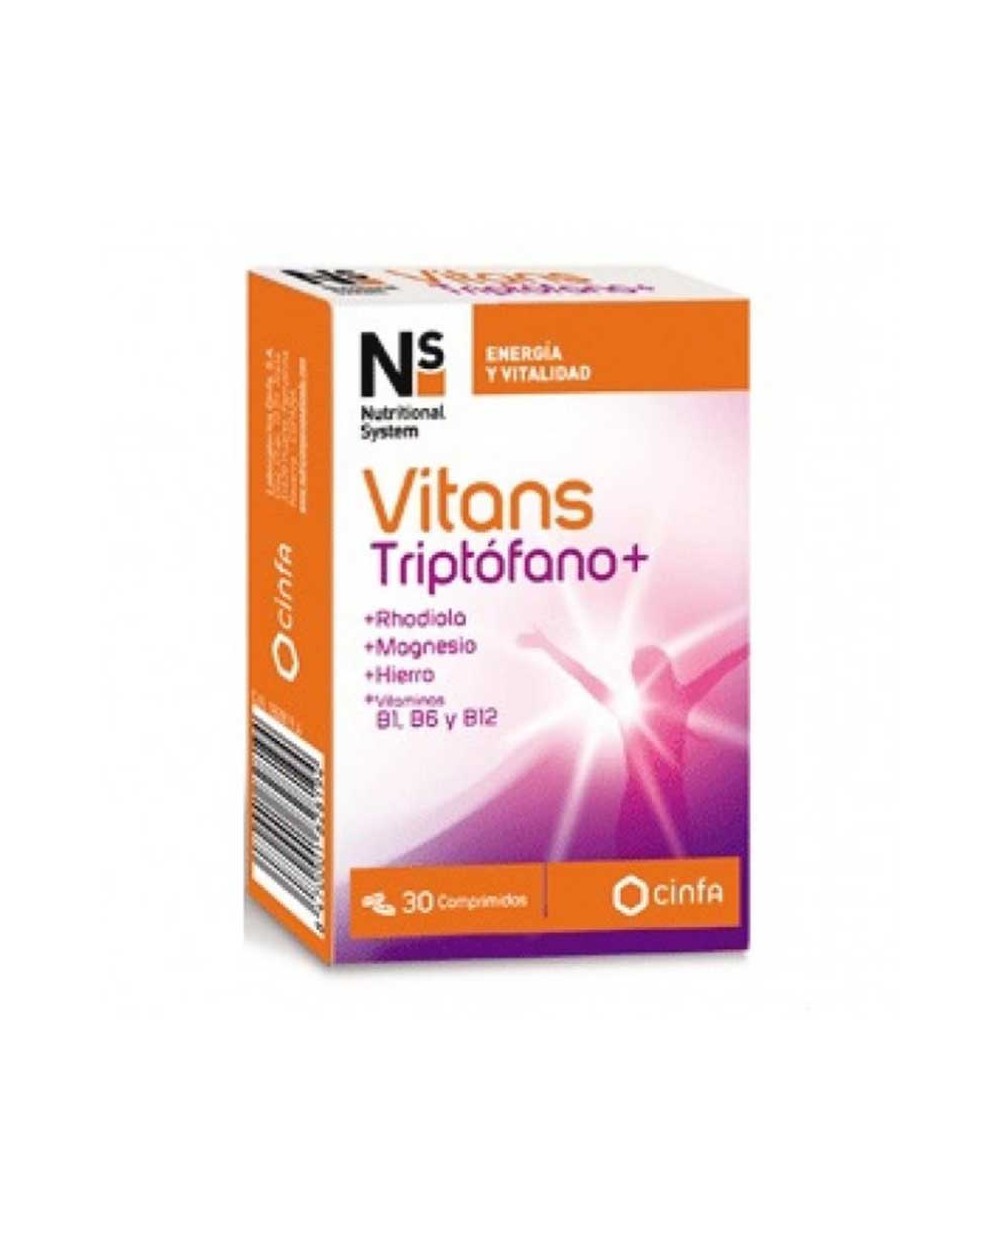 Vitans Triptófano+ NS para prevenir la ansiedad y estrés– 30 comprimidos